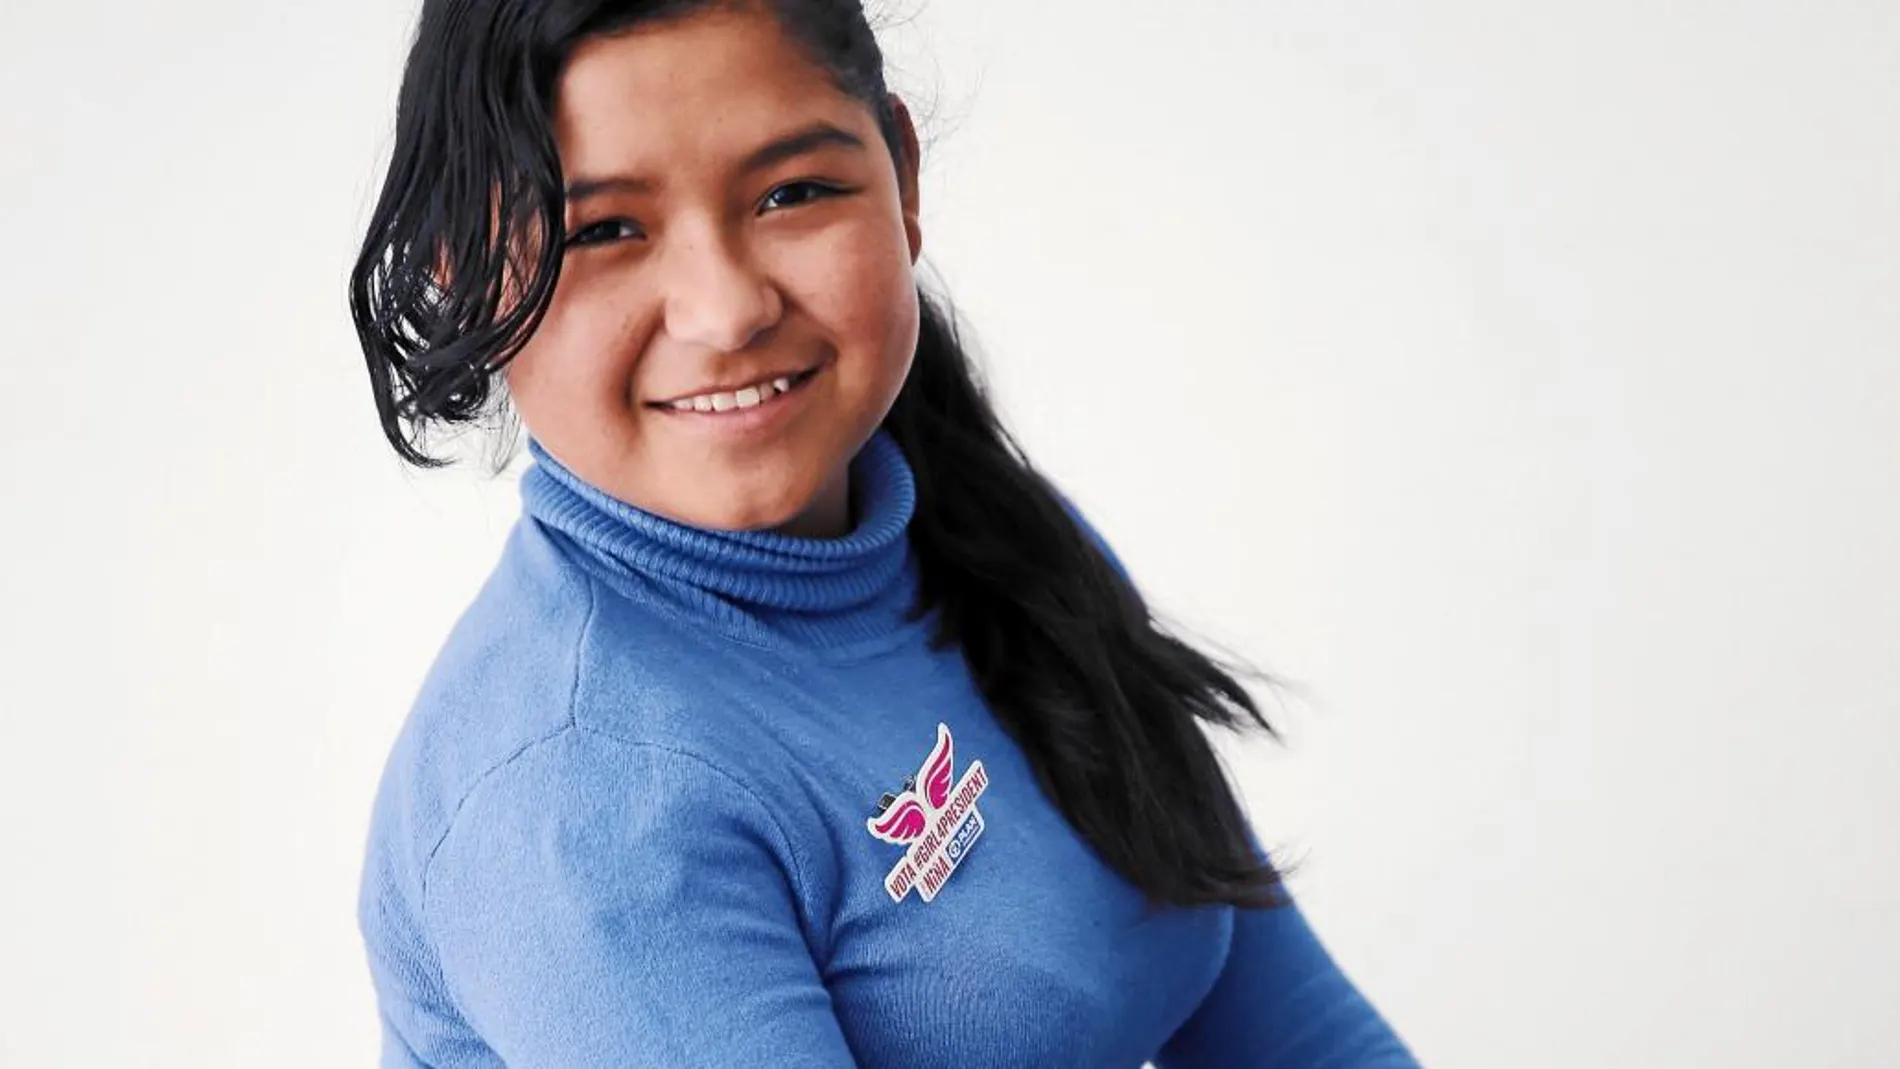 Amelia es la mayor de siete hermanos, vive en Guatemala. Y reconoce que impera el machismo. La situación se agrava con aquellas menores que se han quedado embarazadas